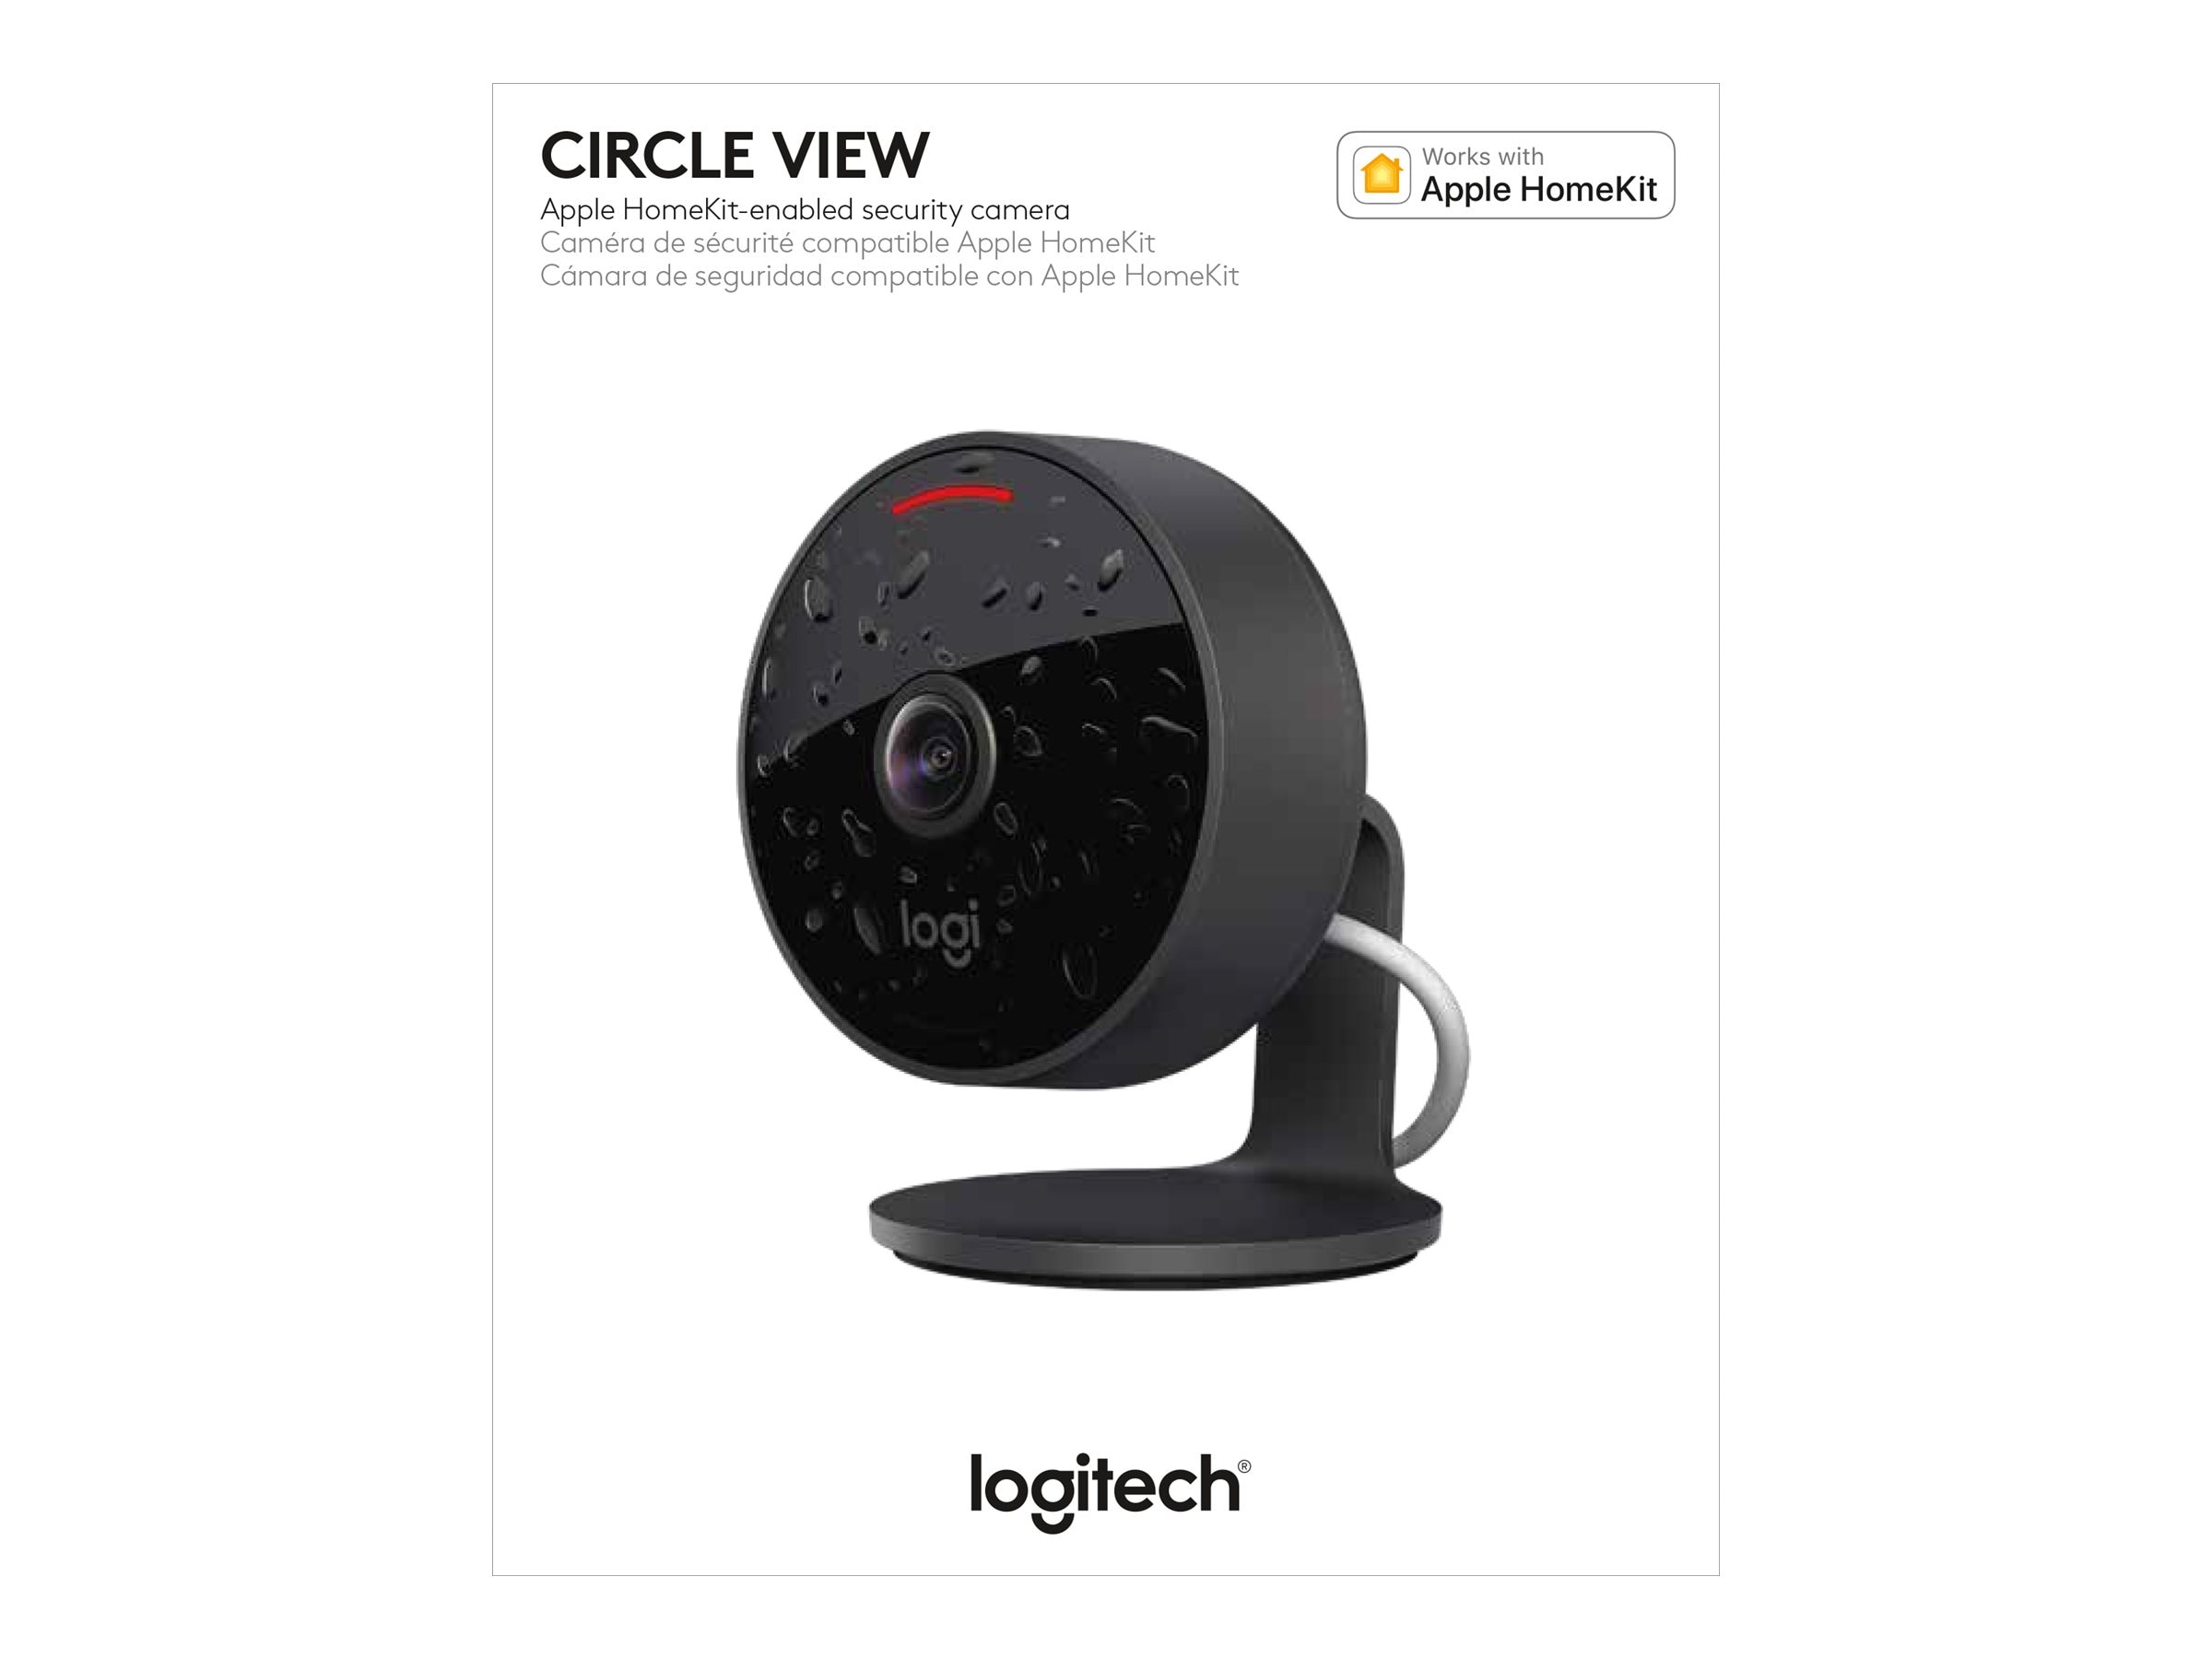 Caméra de sécurité Circle View de Logitech compatible avec HomeKit d'Apple  - Apple (FR)